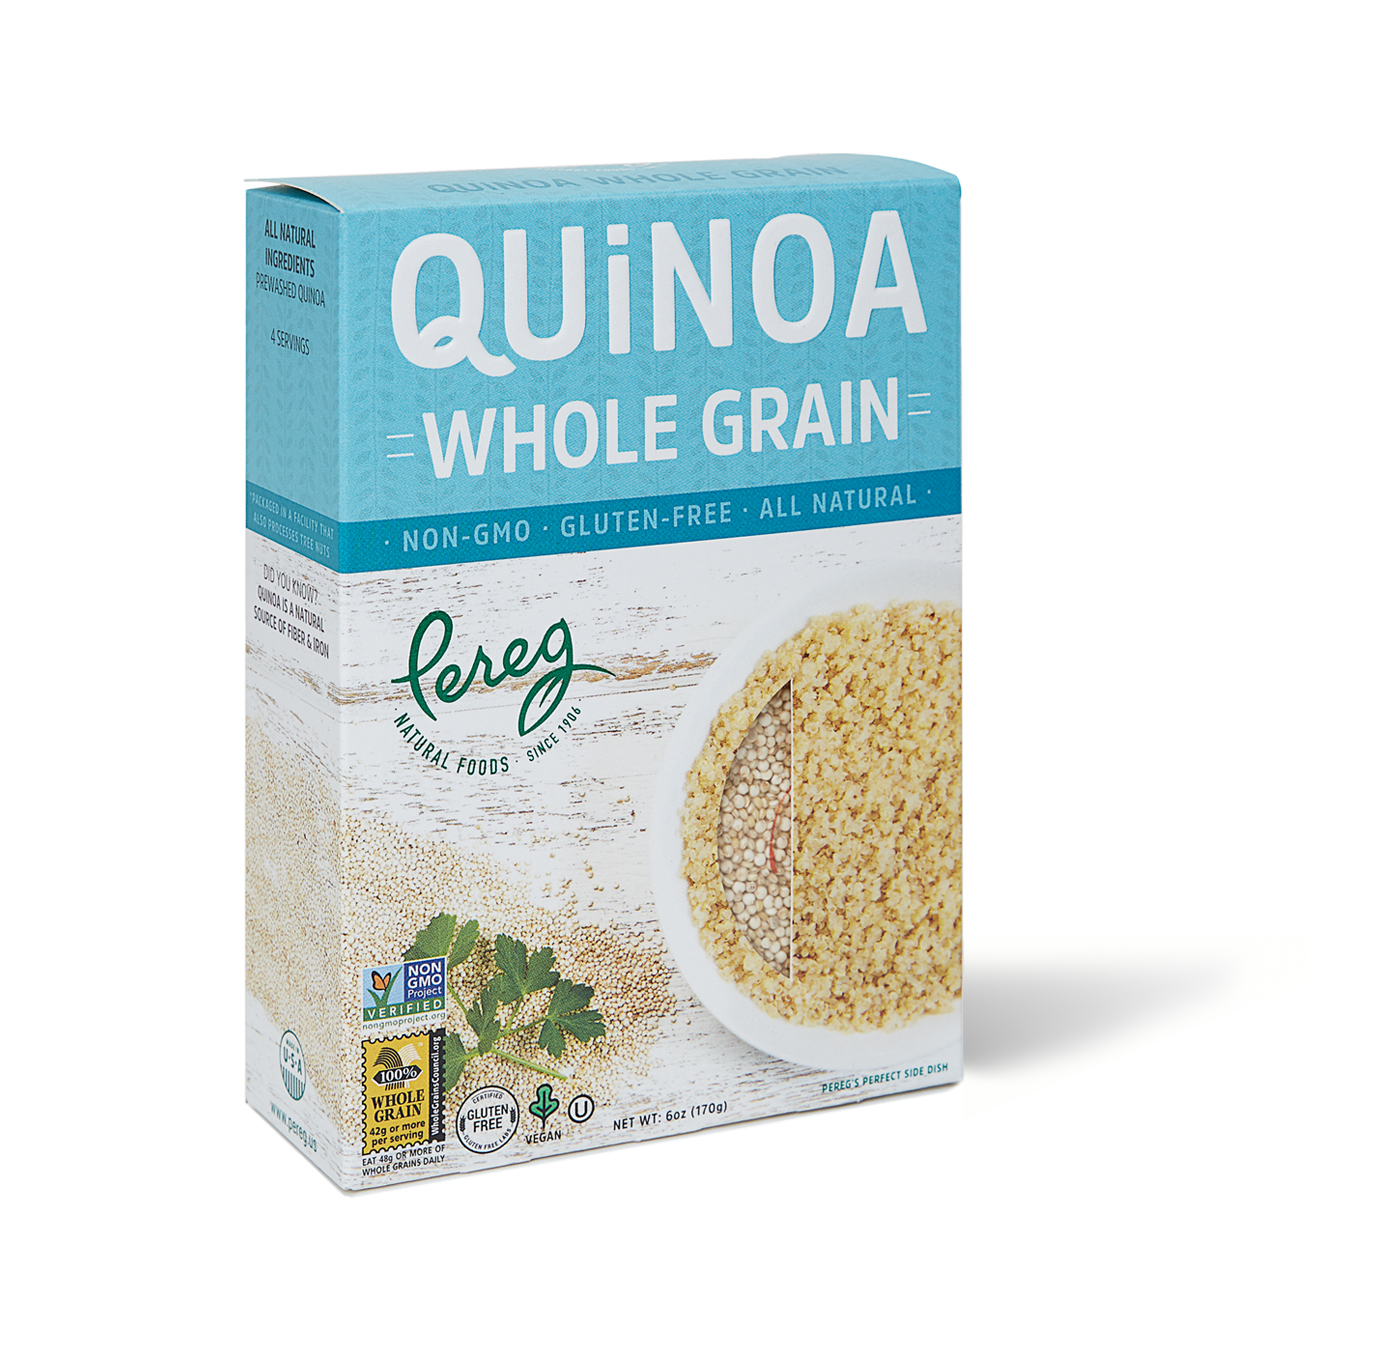 Quinoa “Whole Grain” – KOSHER PROVISIONS